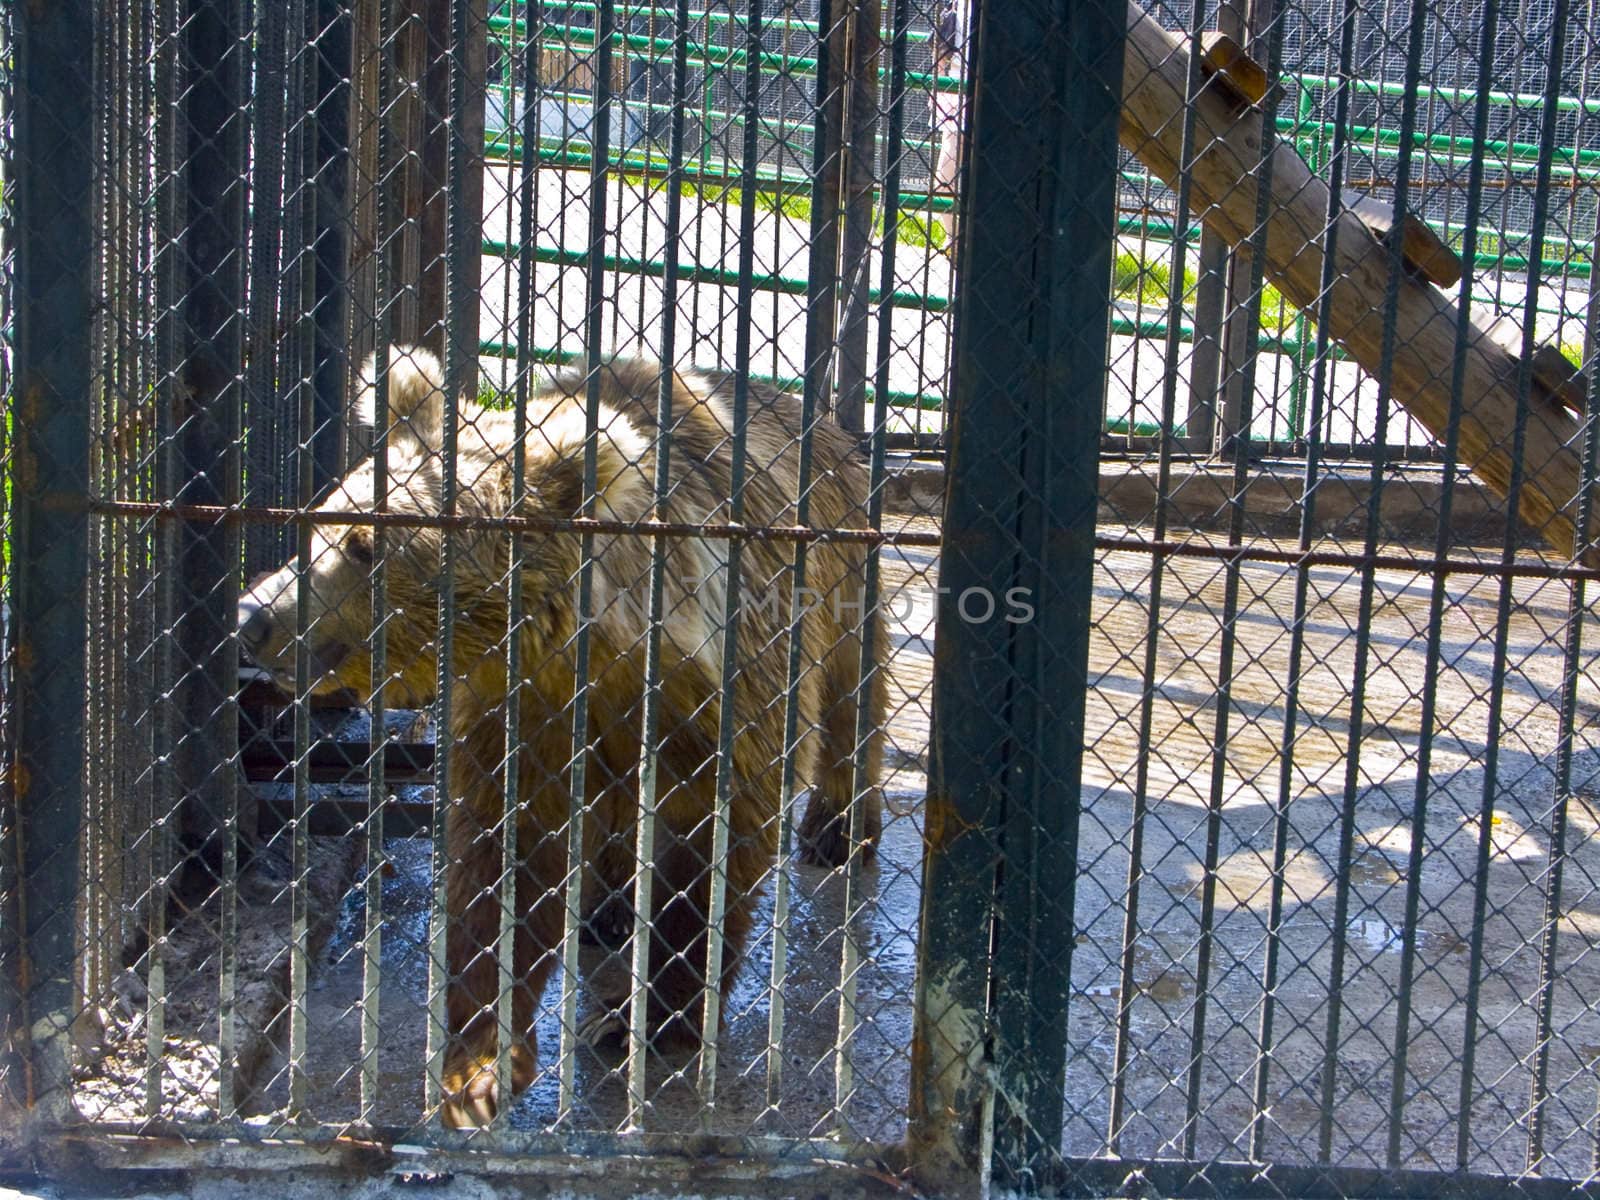 The bear cub behind a lattice by soloir